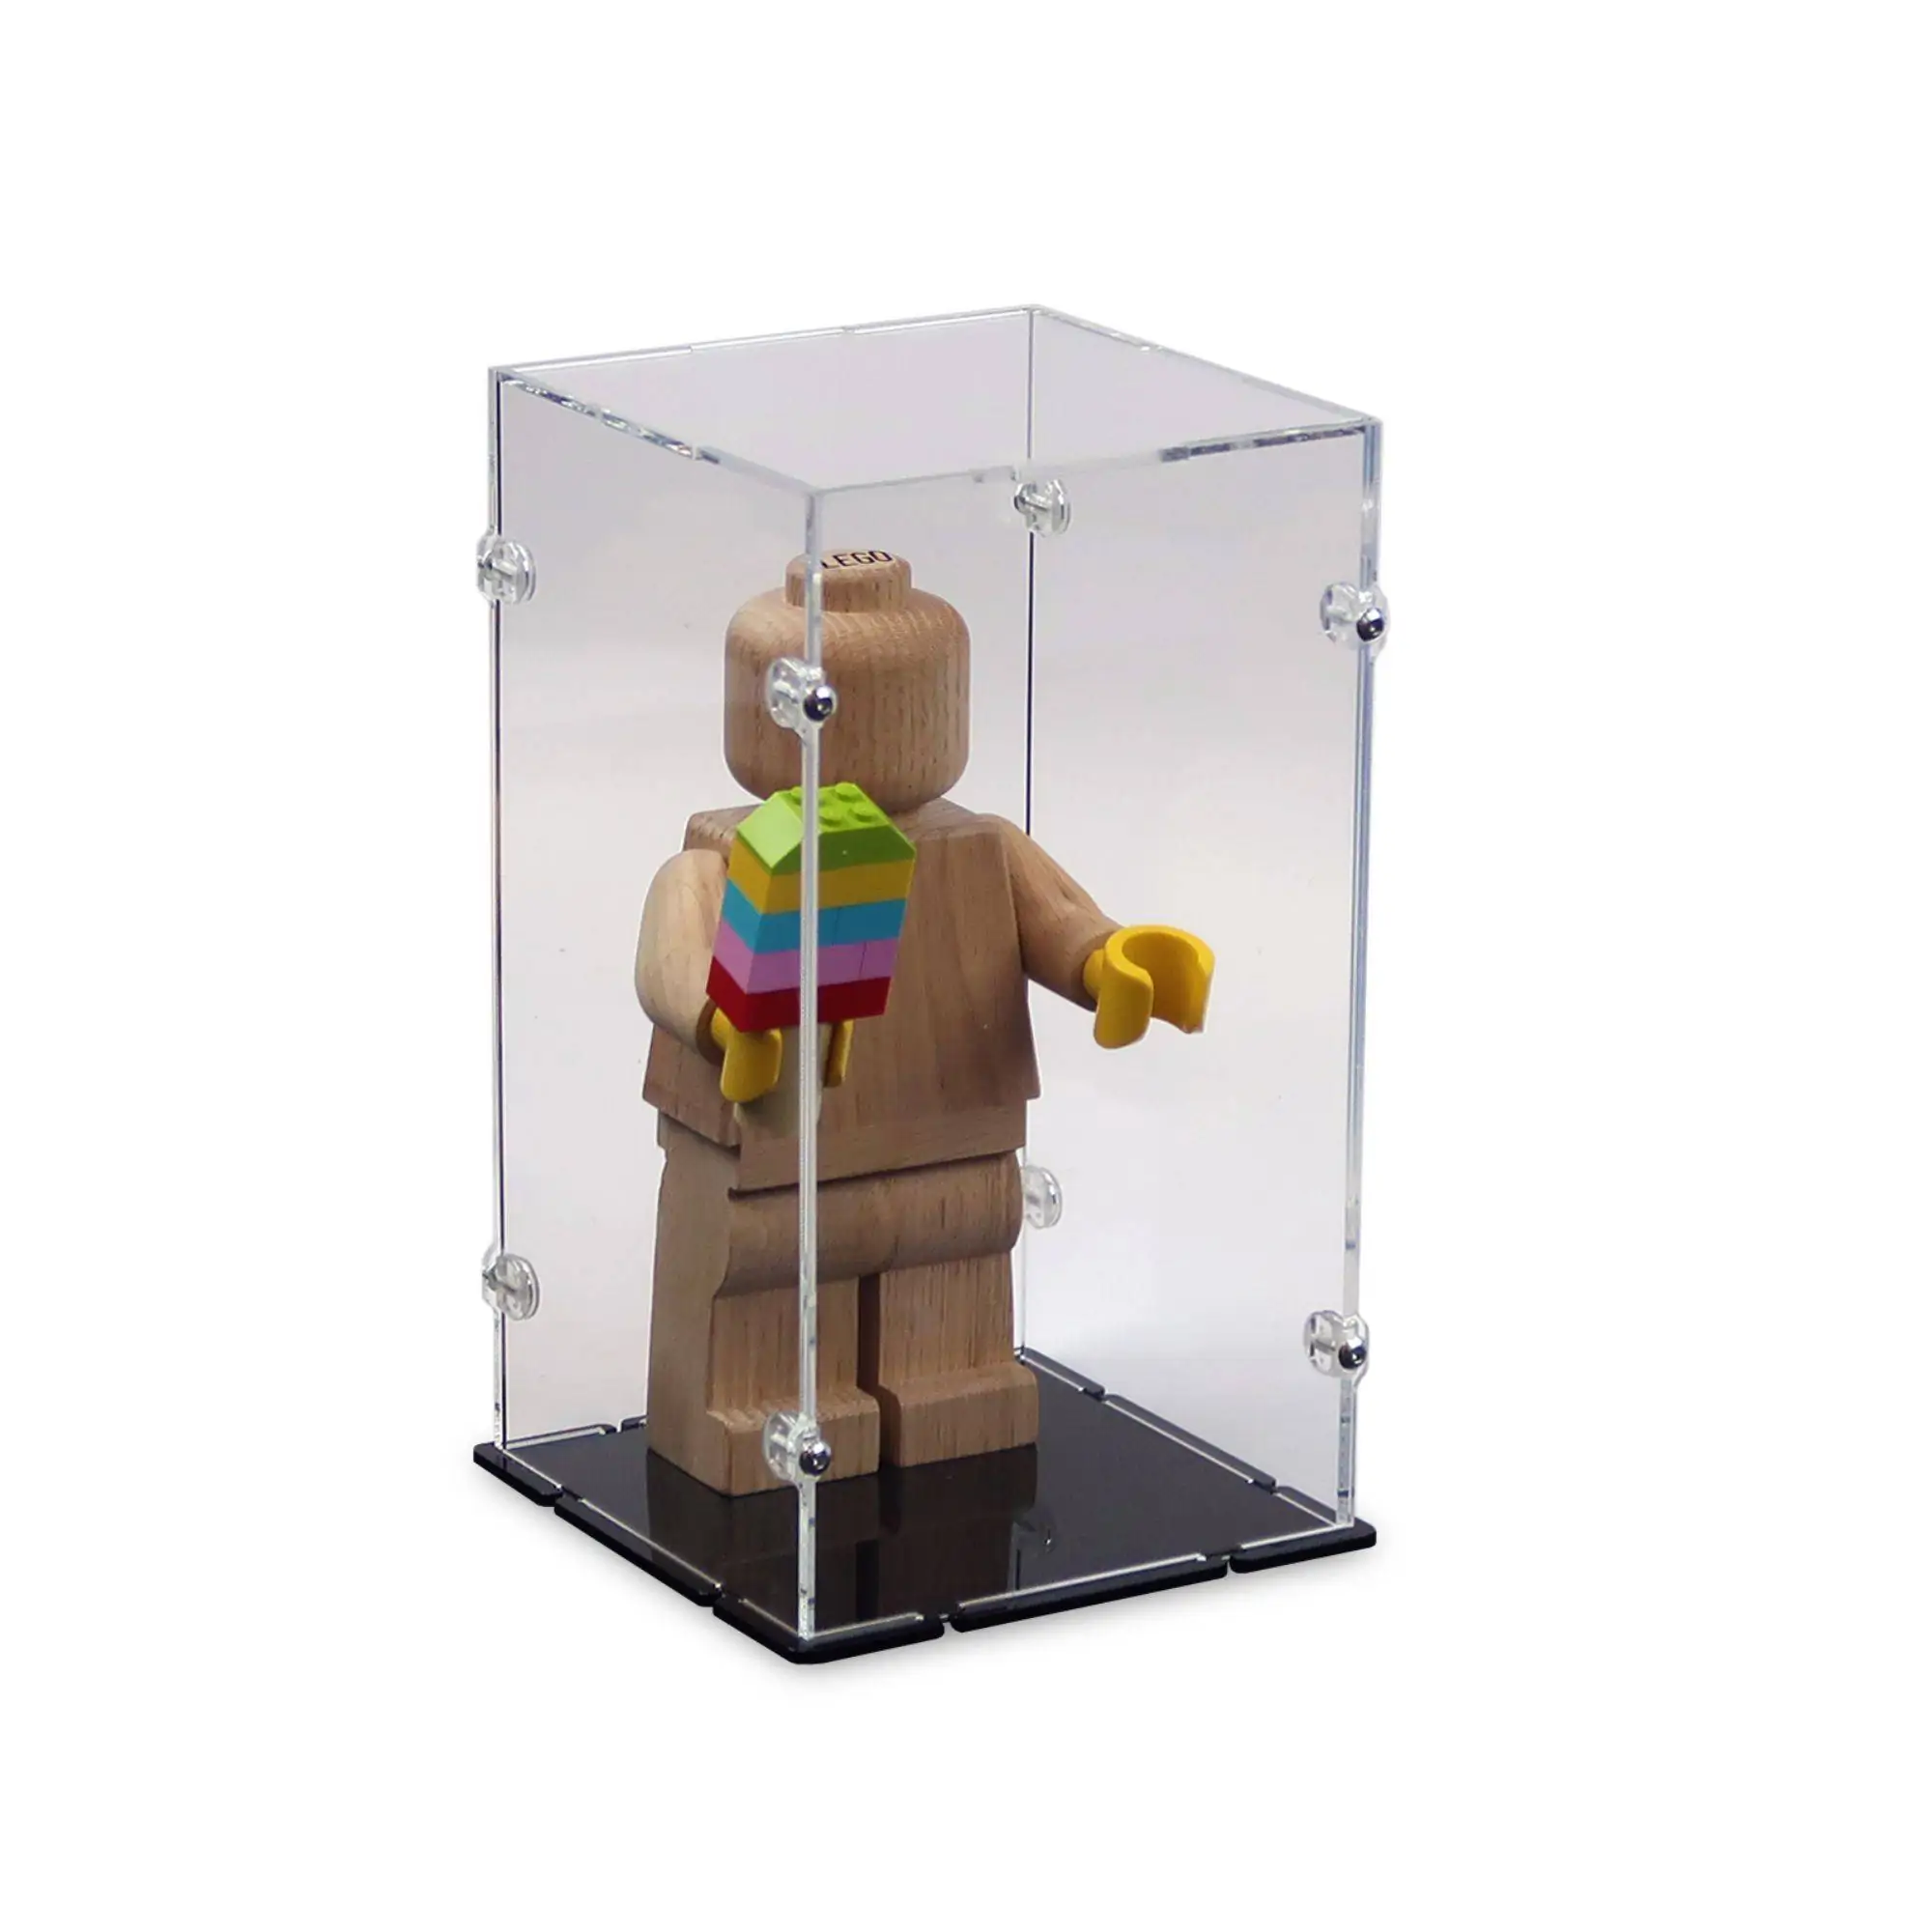 Acrylic for LEGO Wooden Minifigure iDisplayit